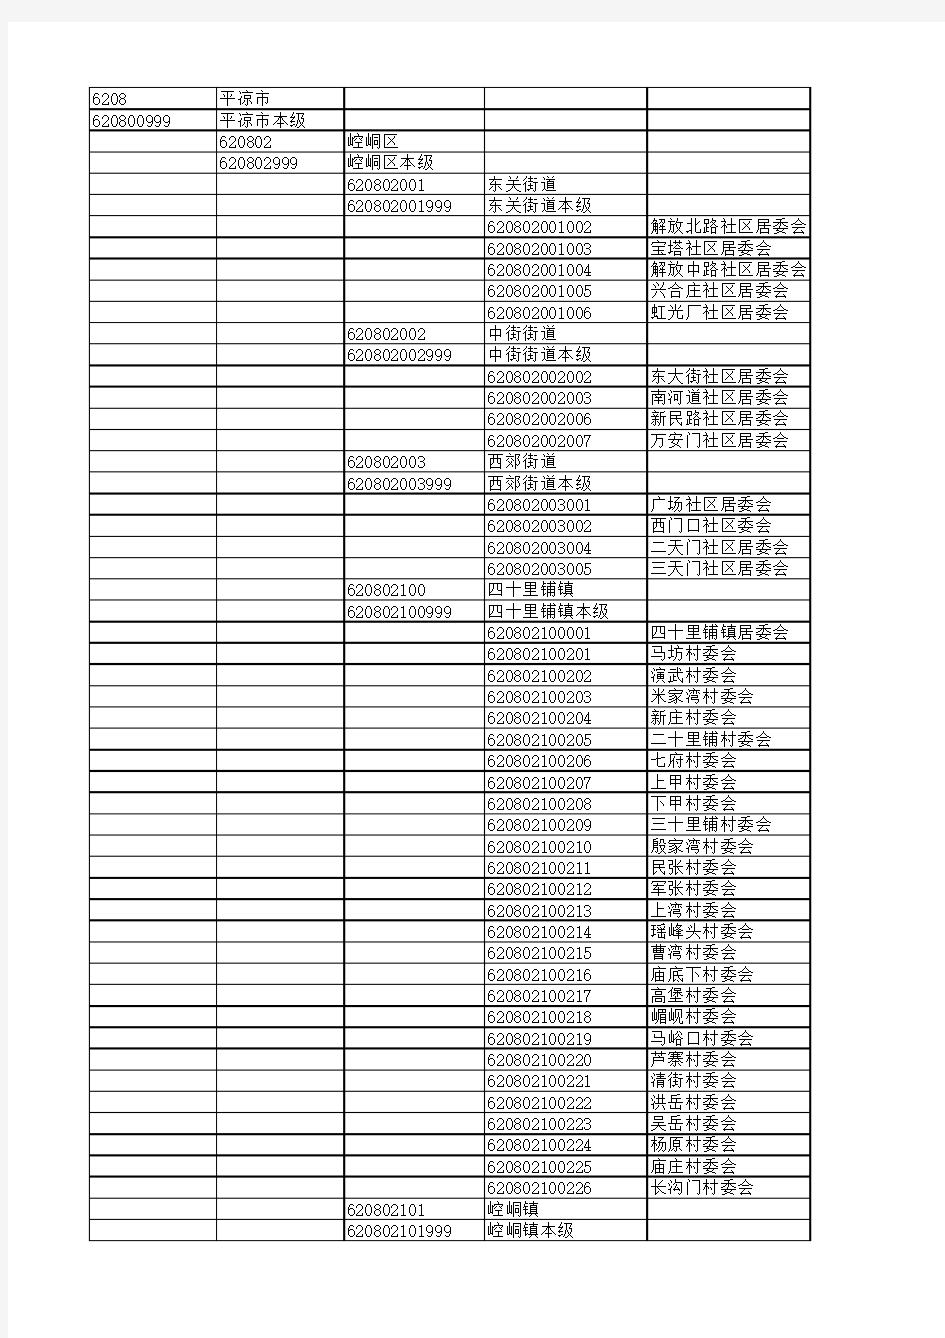 平凉市行政区划代码表